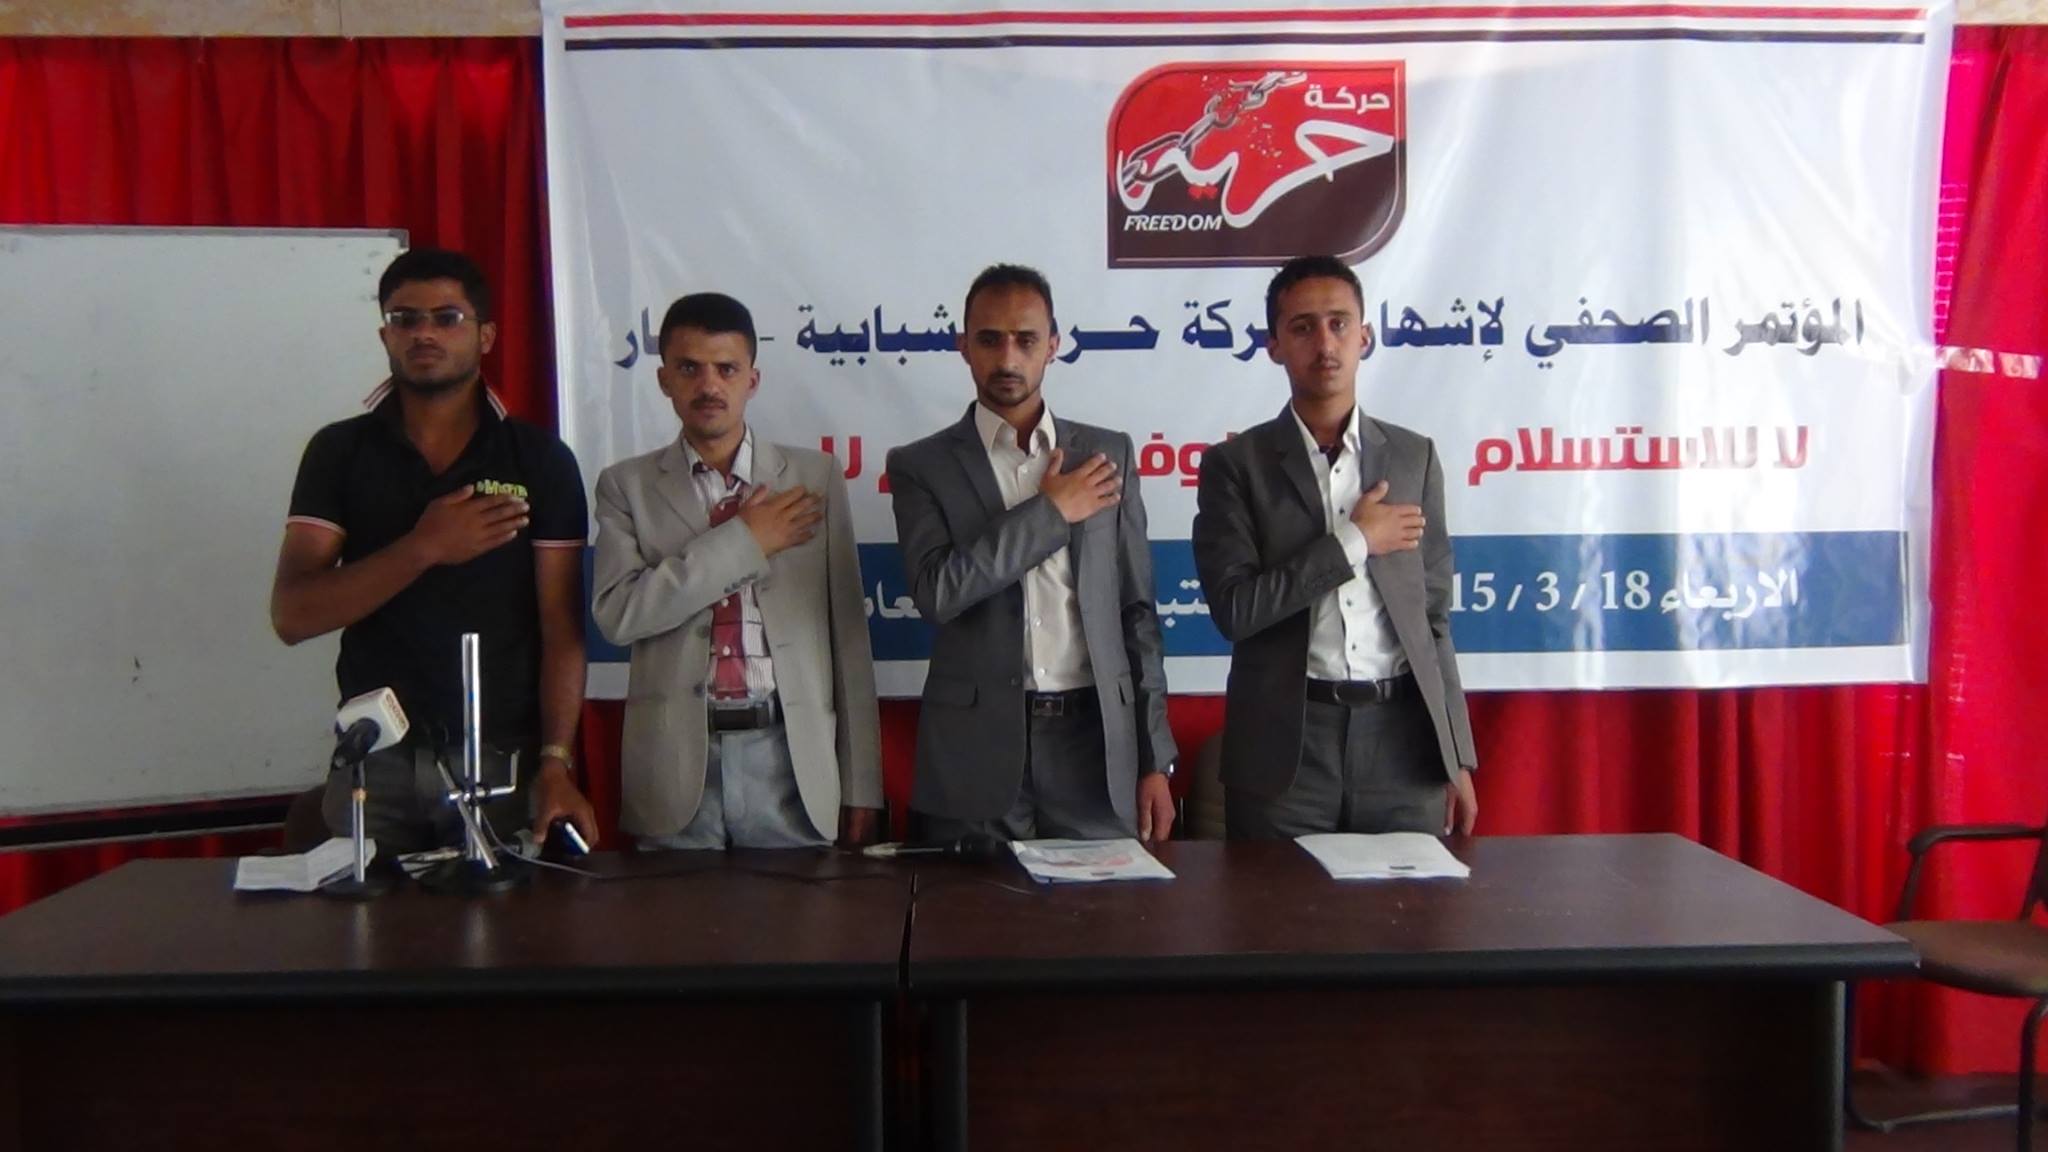 اشهار حركة حرية الطلابية المناهضة لانقلاب الحوثي في ذمار